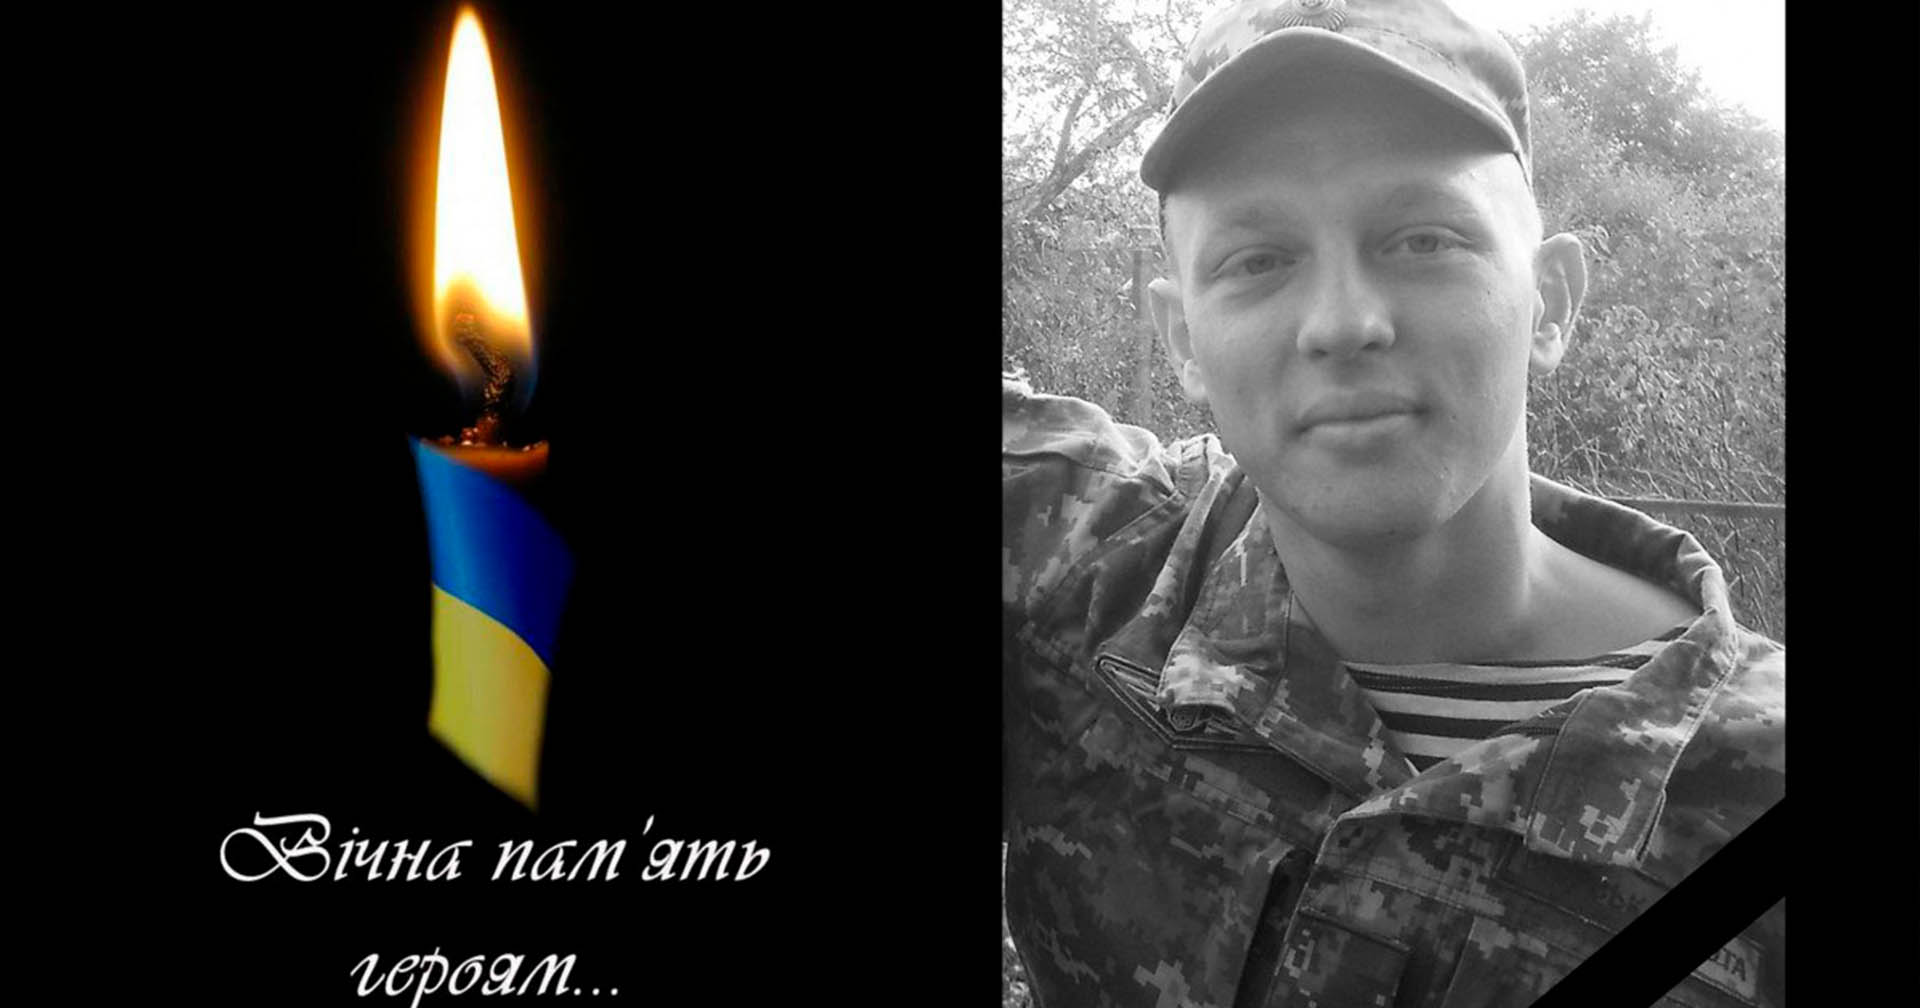 Від отриманих на війні поранень помер захисник України, випускник Університету Григорія Сковороди в Переяславі